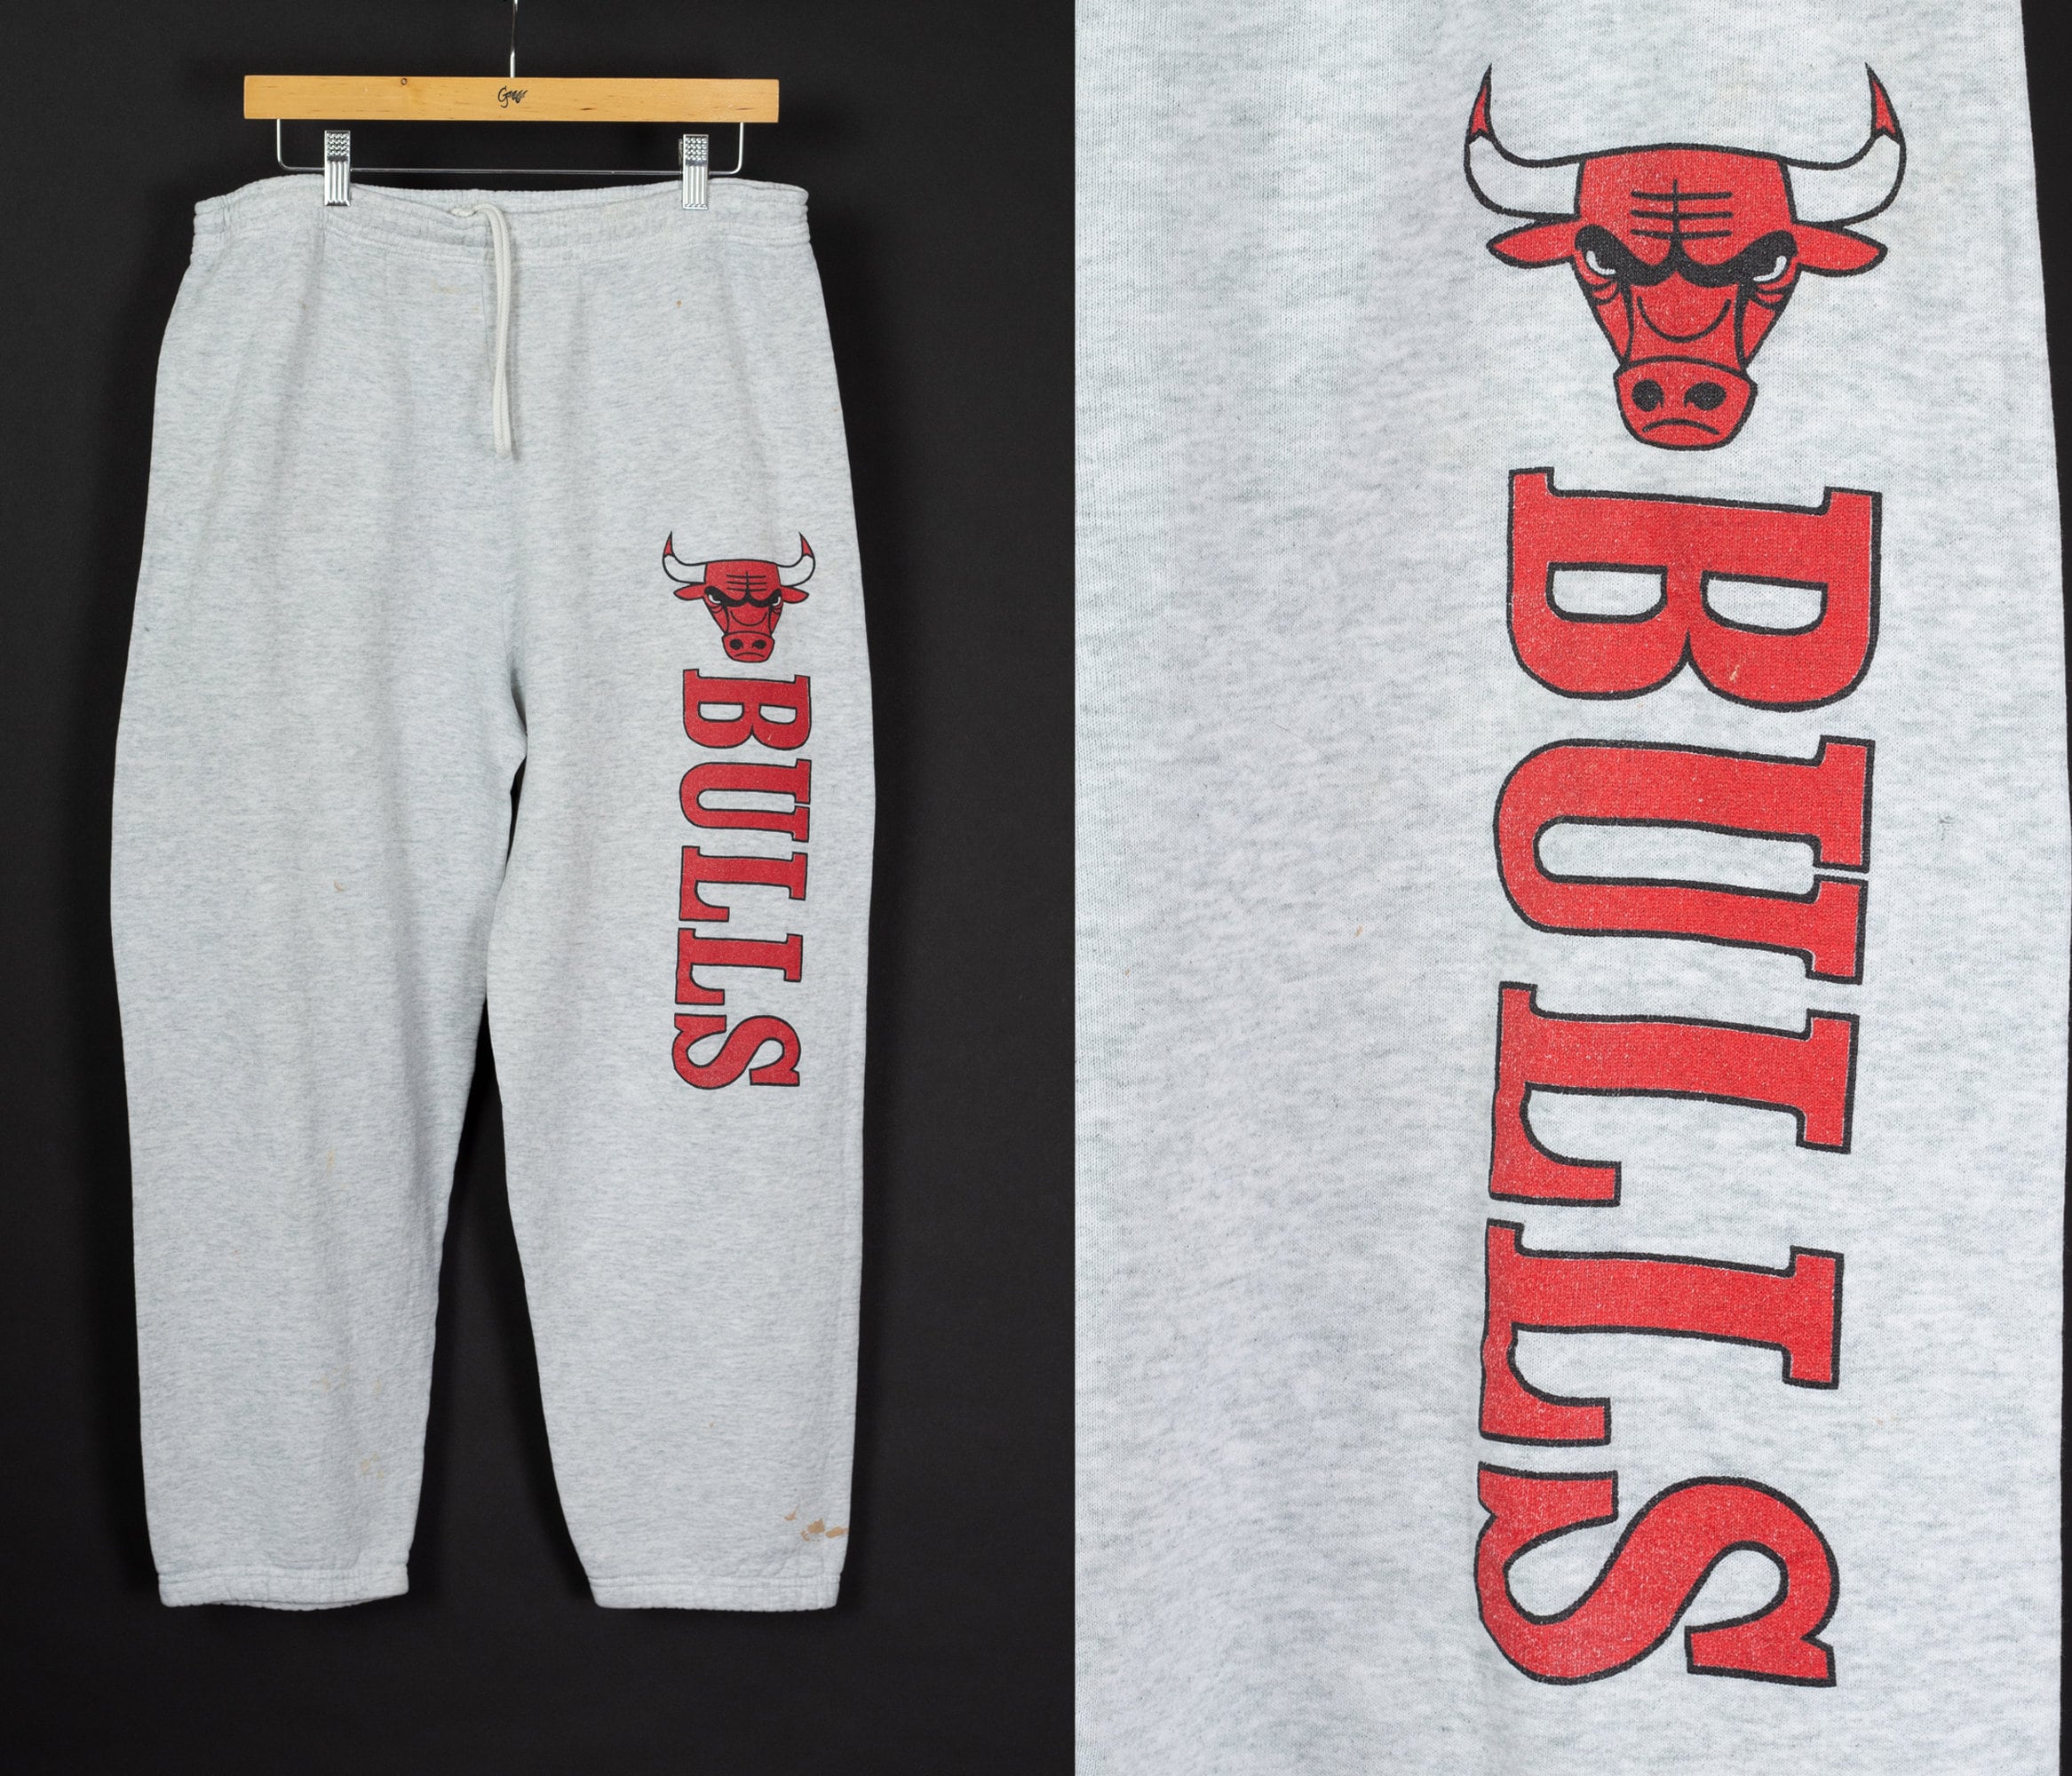 Chicago Bulls Pants, Bulls Leggings, Pajama Pants